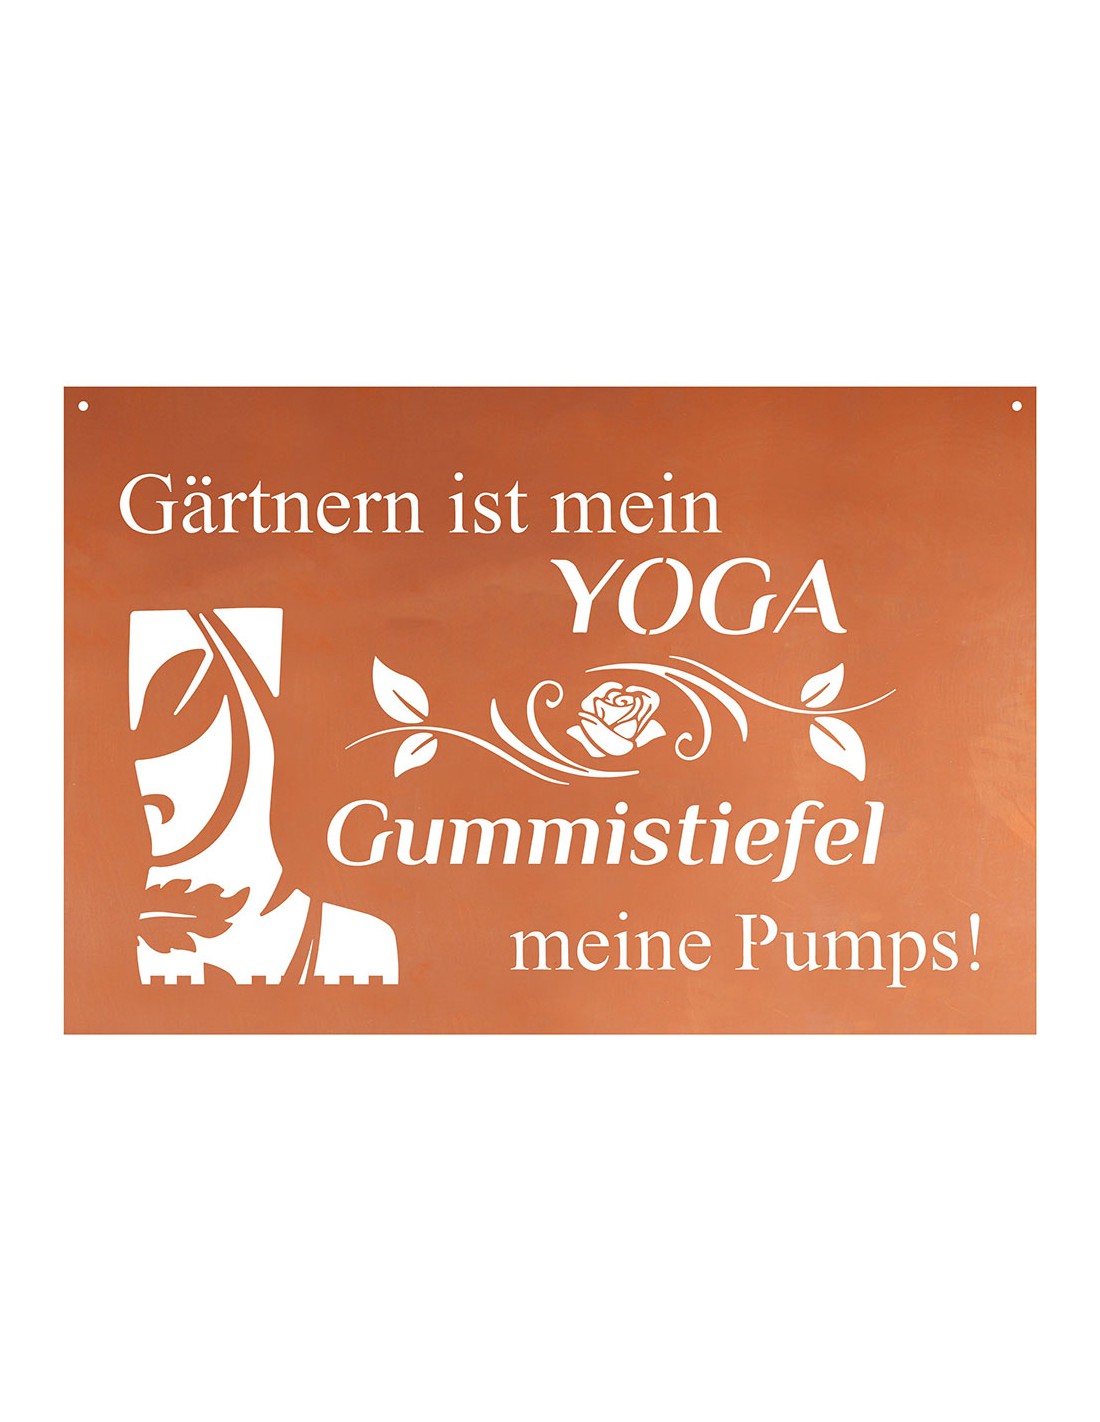 Gartnern Ist Mein Yoga Gummistiefel Meine Pumps Schoner Spruch Garten Blechschild 60 Cm Breit